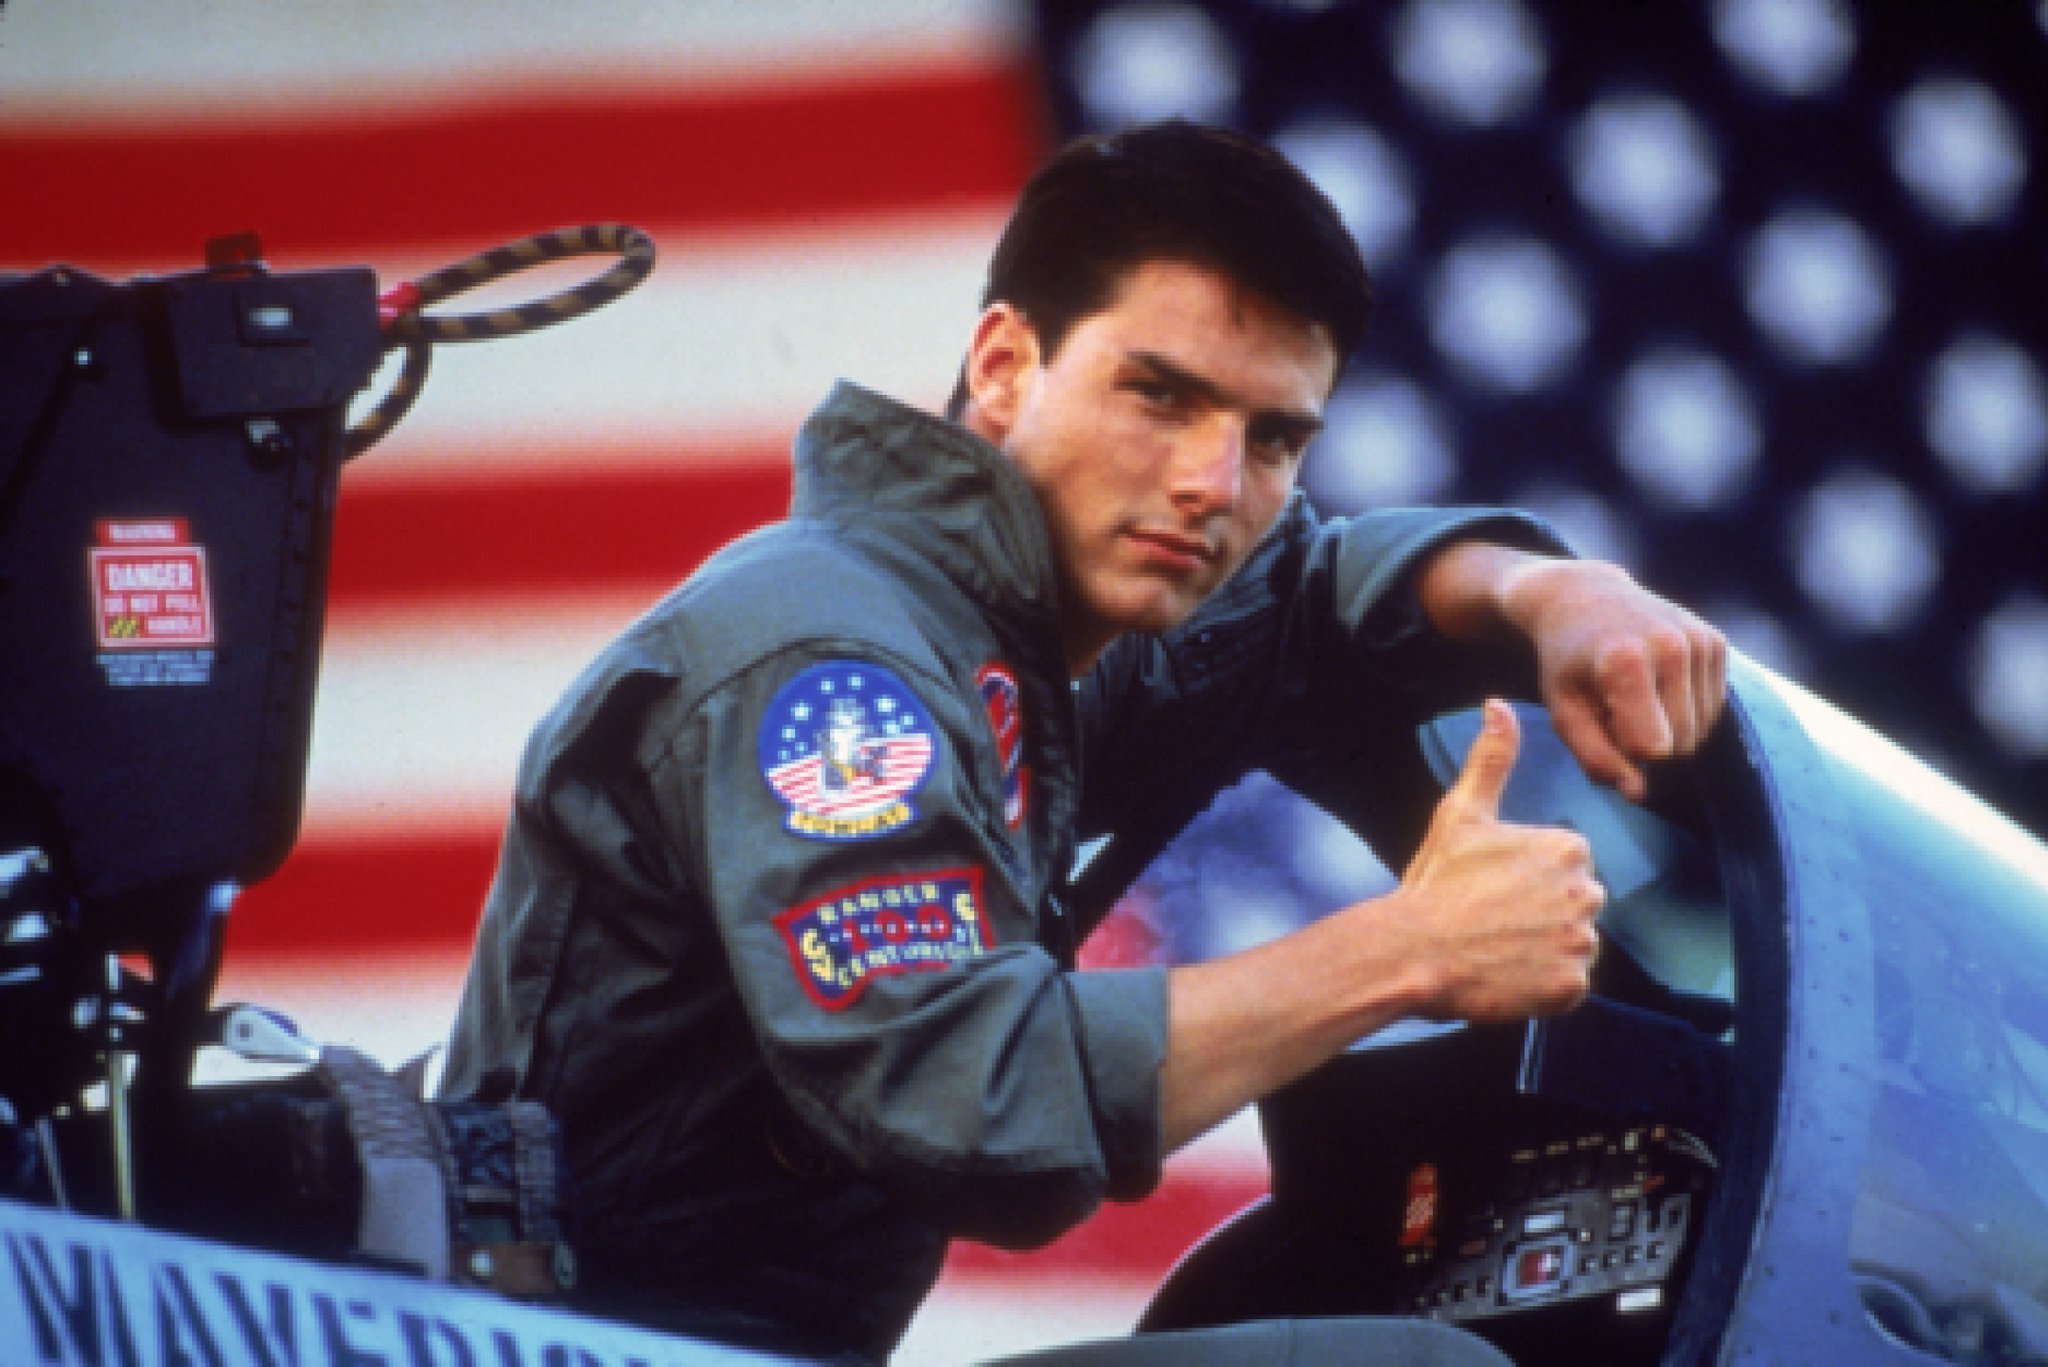 Habrá tercera parte de ‘Top Gun’ y tendría de vuelta a Tom Cruise, según medio